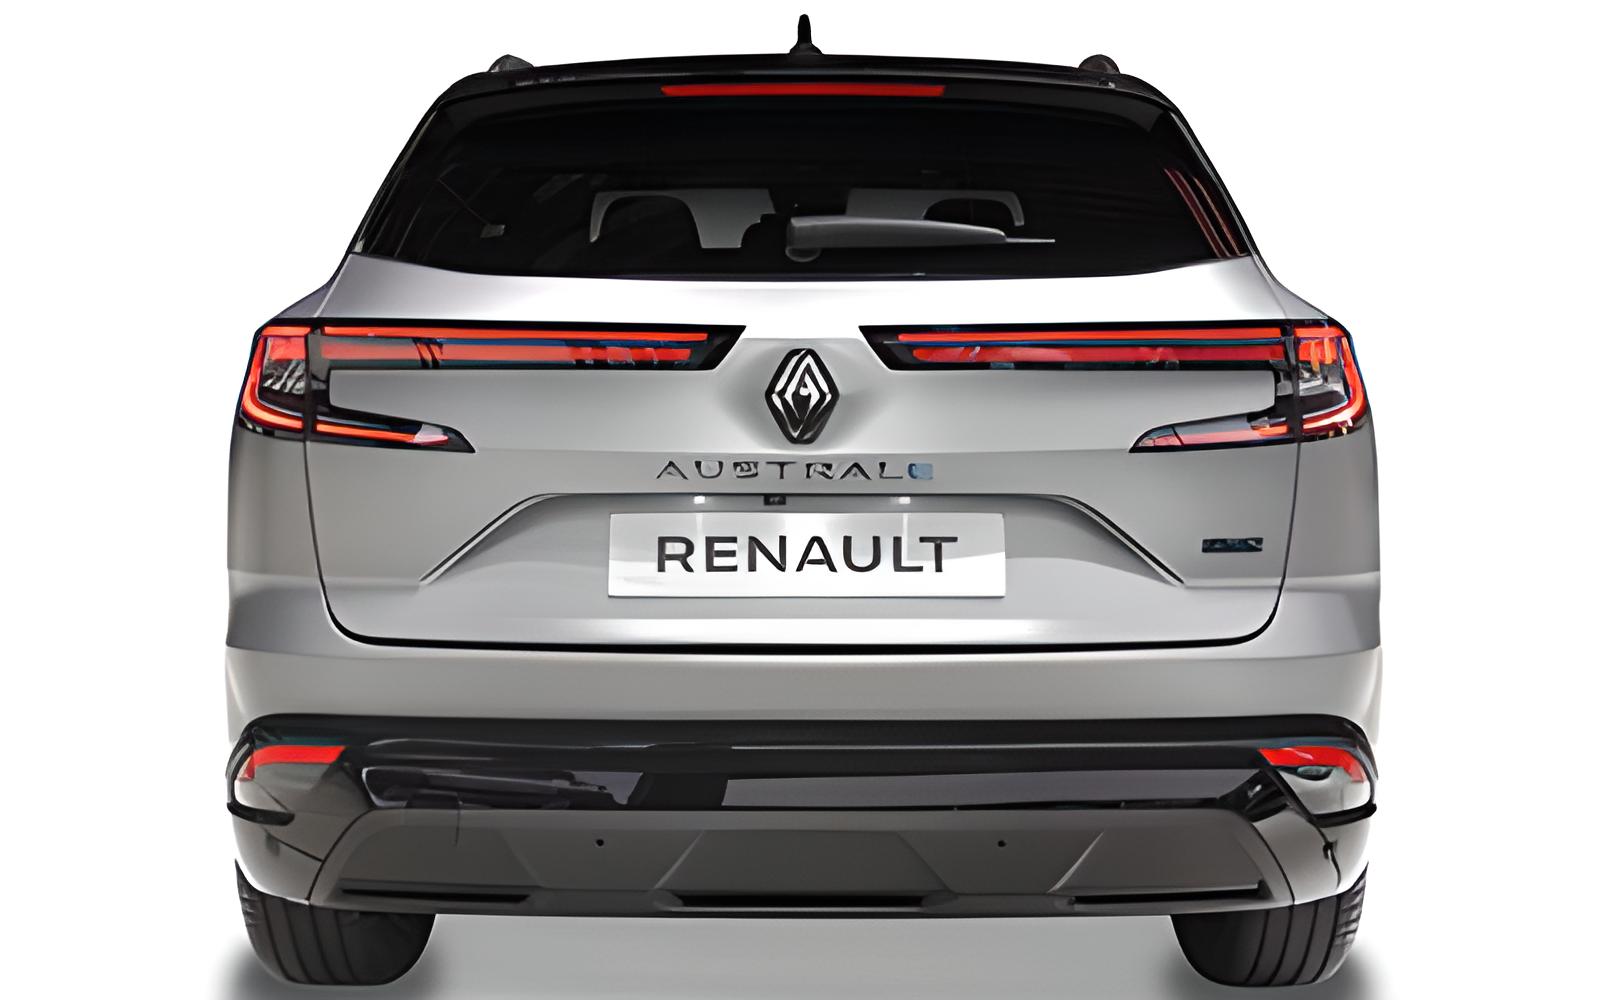 Renault Austral E-Tech entdecken